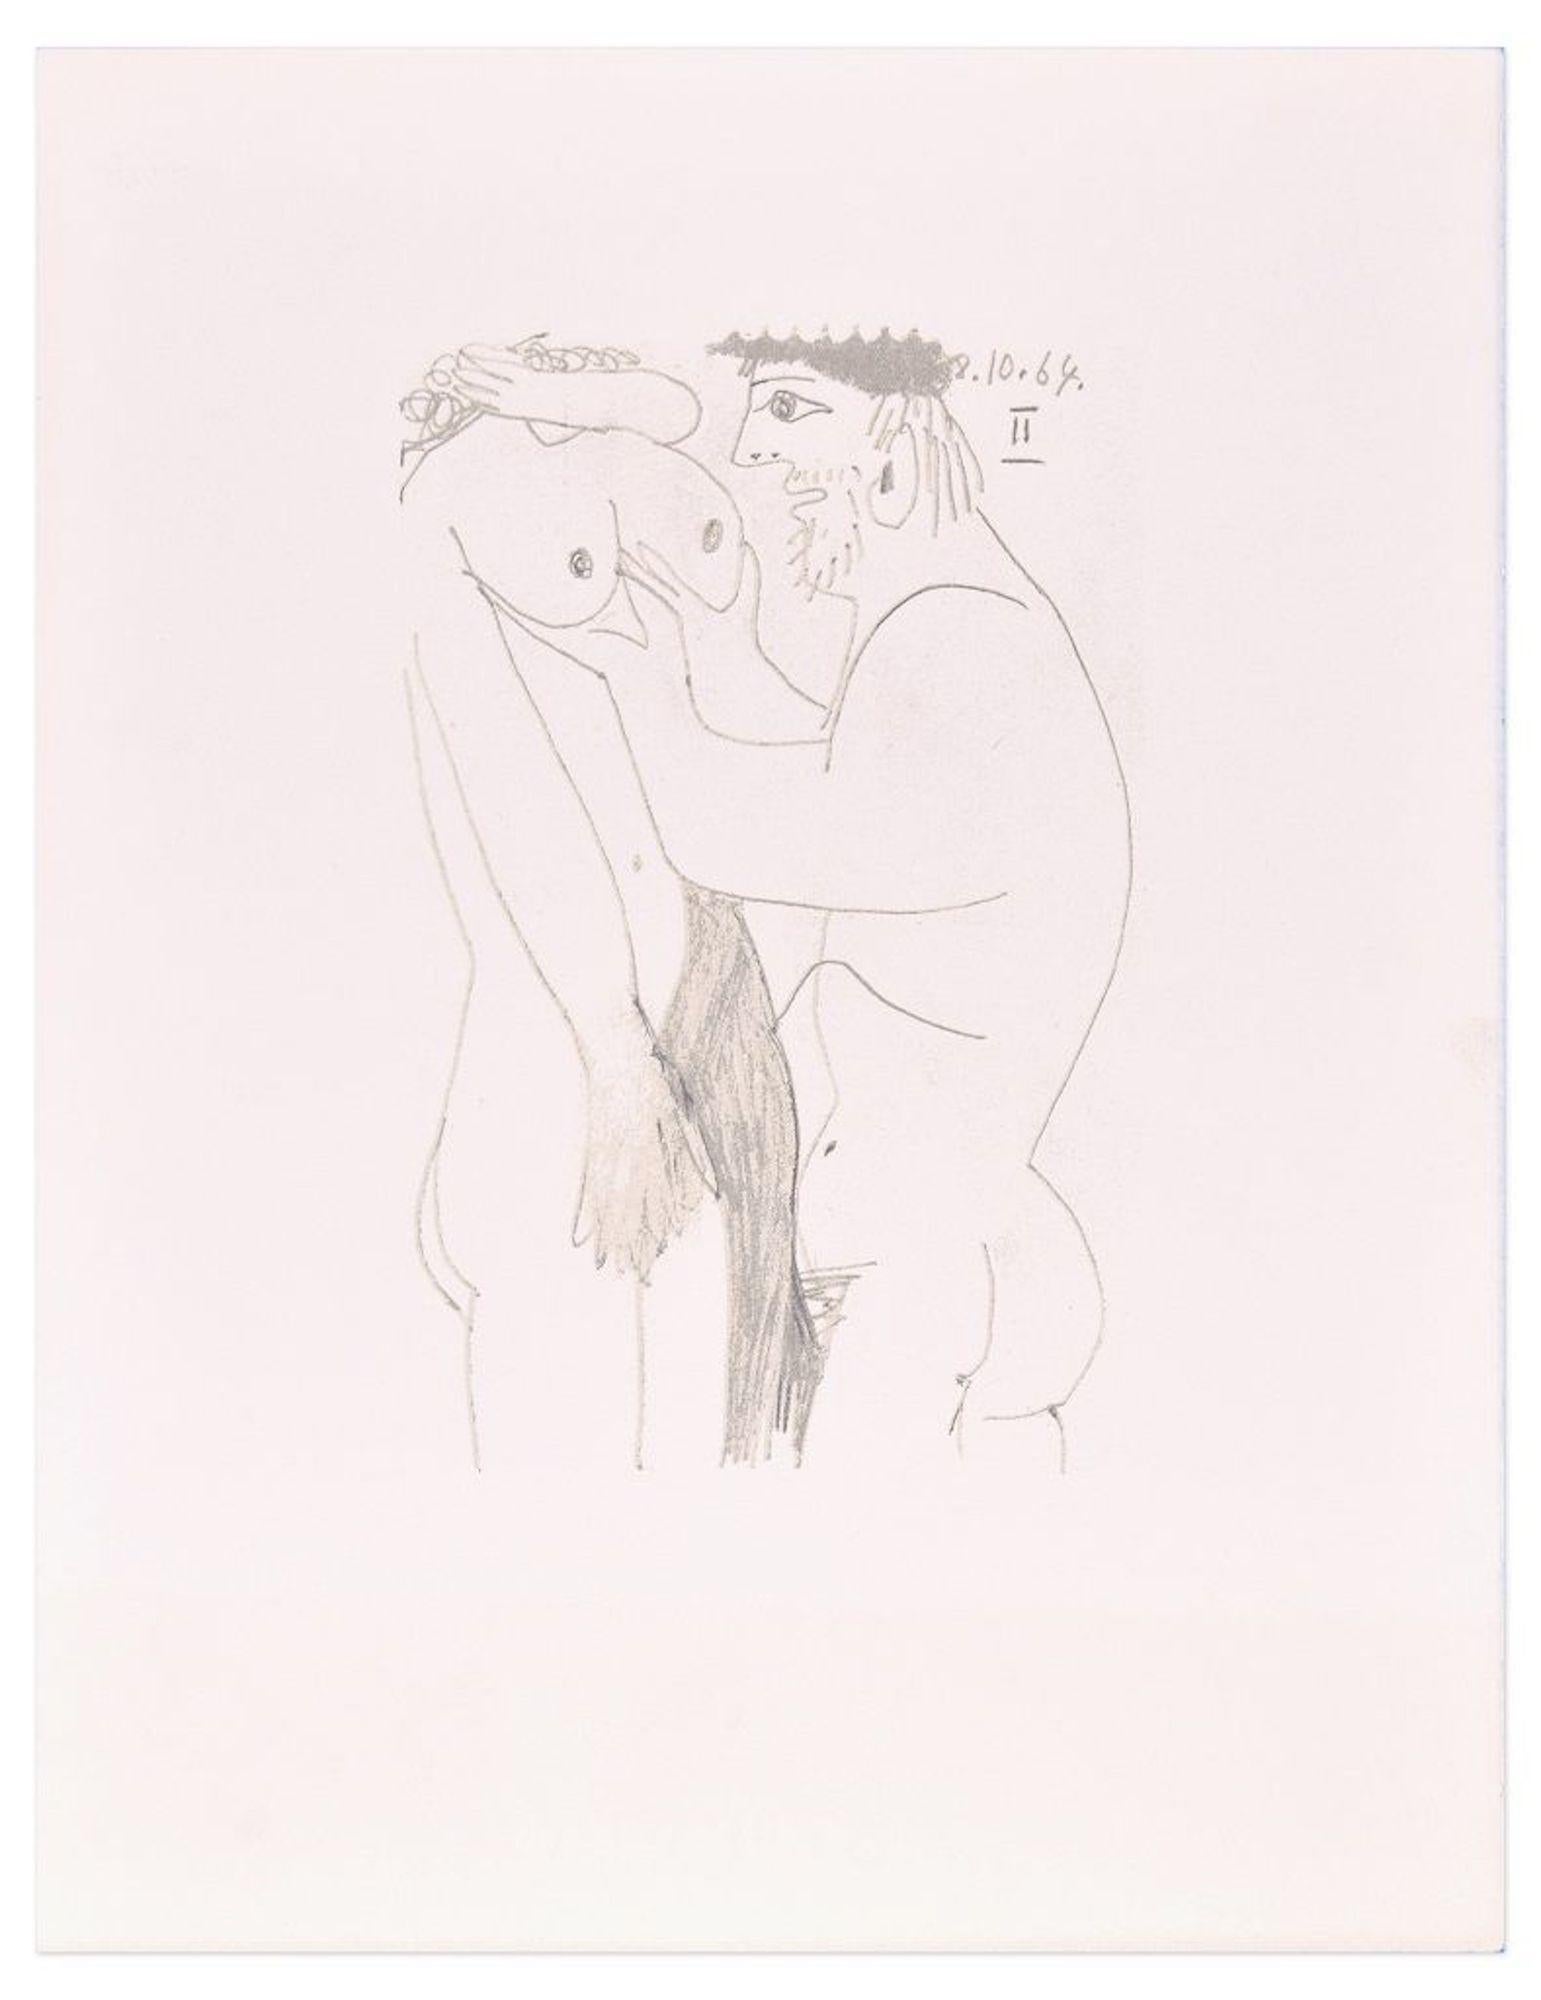 (after) Pablo Picasso Print - Le Goût du Bonheur - 8.10.64 II - Lithograph After P. Picasso